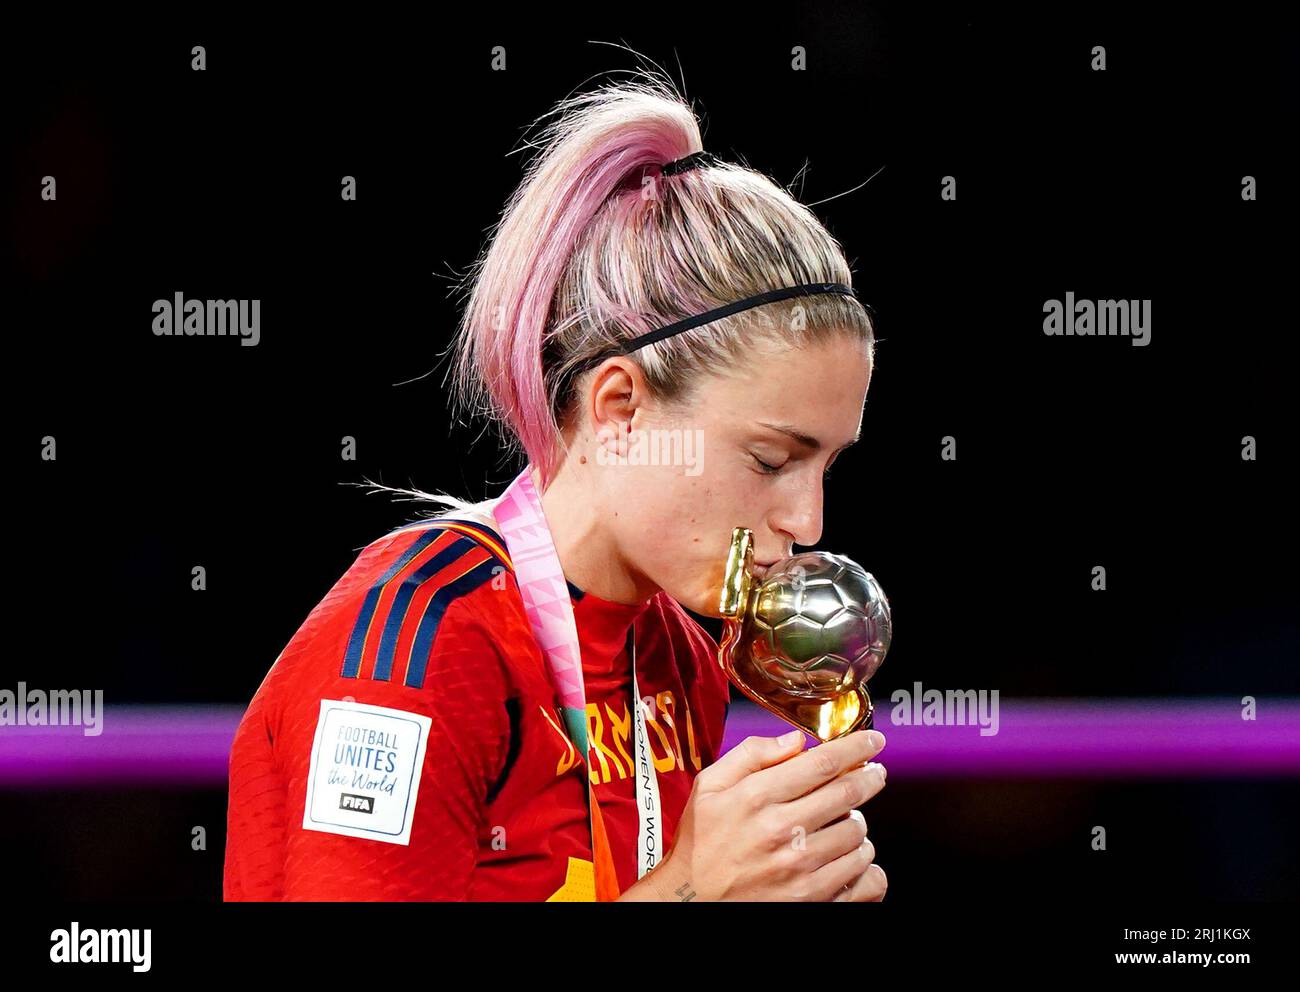 Die Spanierin Alexia Putellas küsst die Trophäe, nachdem sie ihre Medaille nach dem Sieg im Finale der FIFA Frauen-Weltmeisterschaft im Stadion Australien, Sydney, erhalten hat. Bilddatum: Sonntag, 20. August 2023. Stockfoto